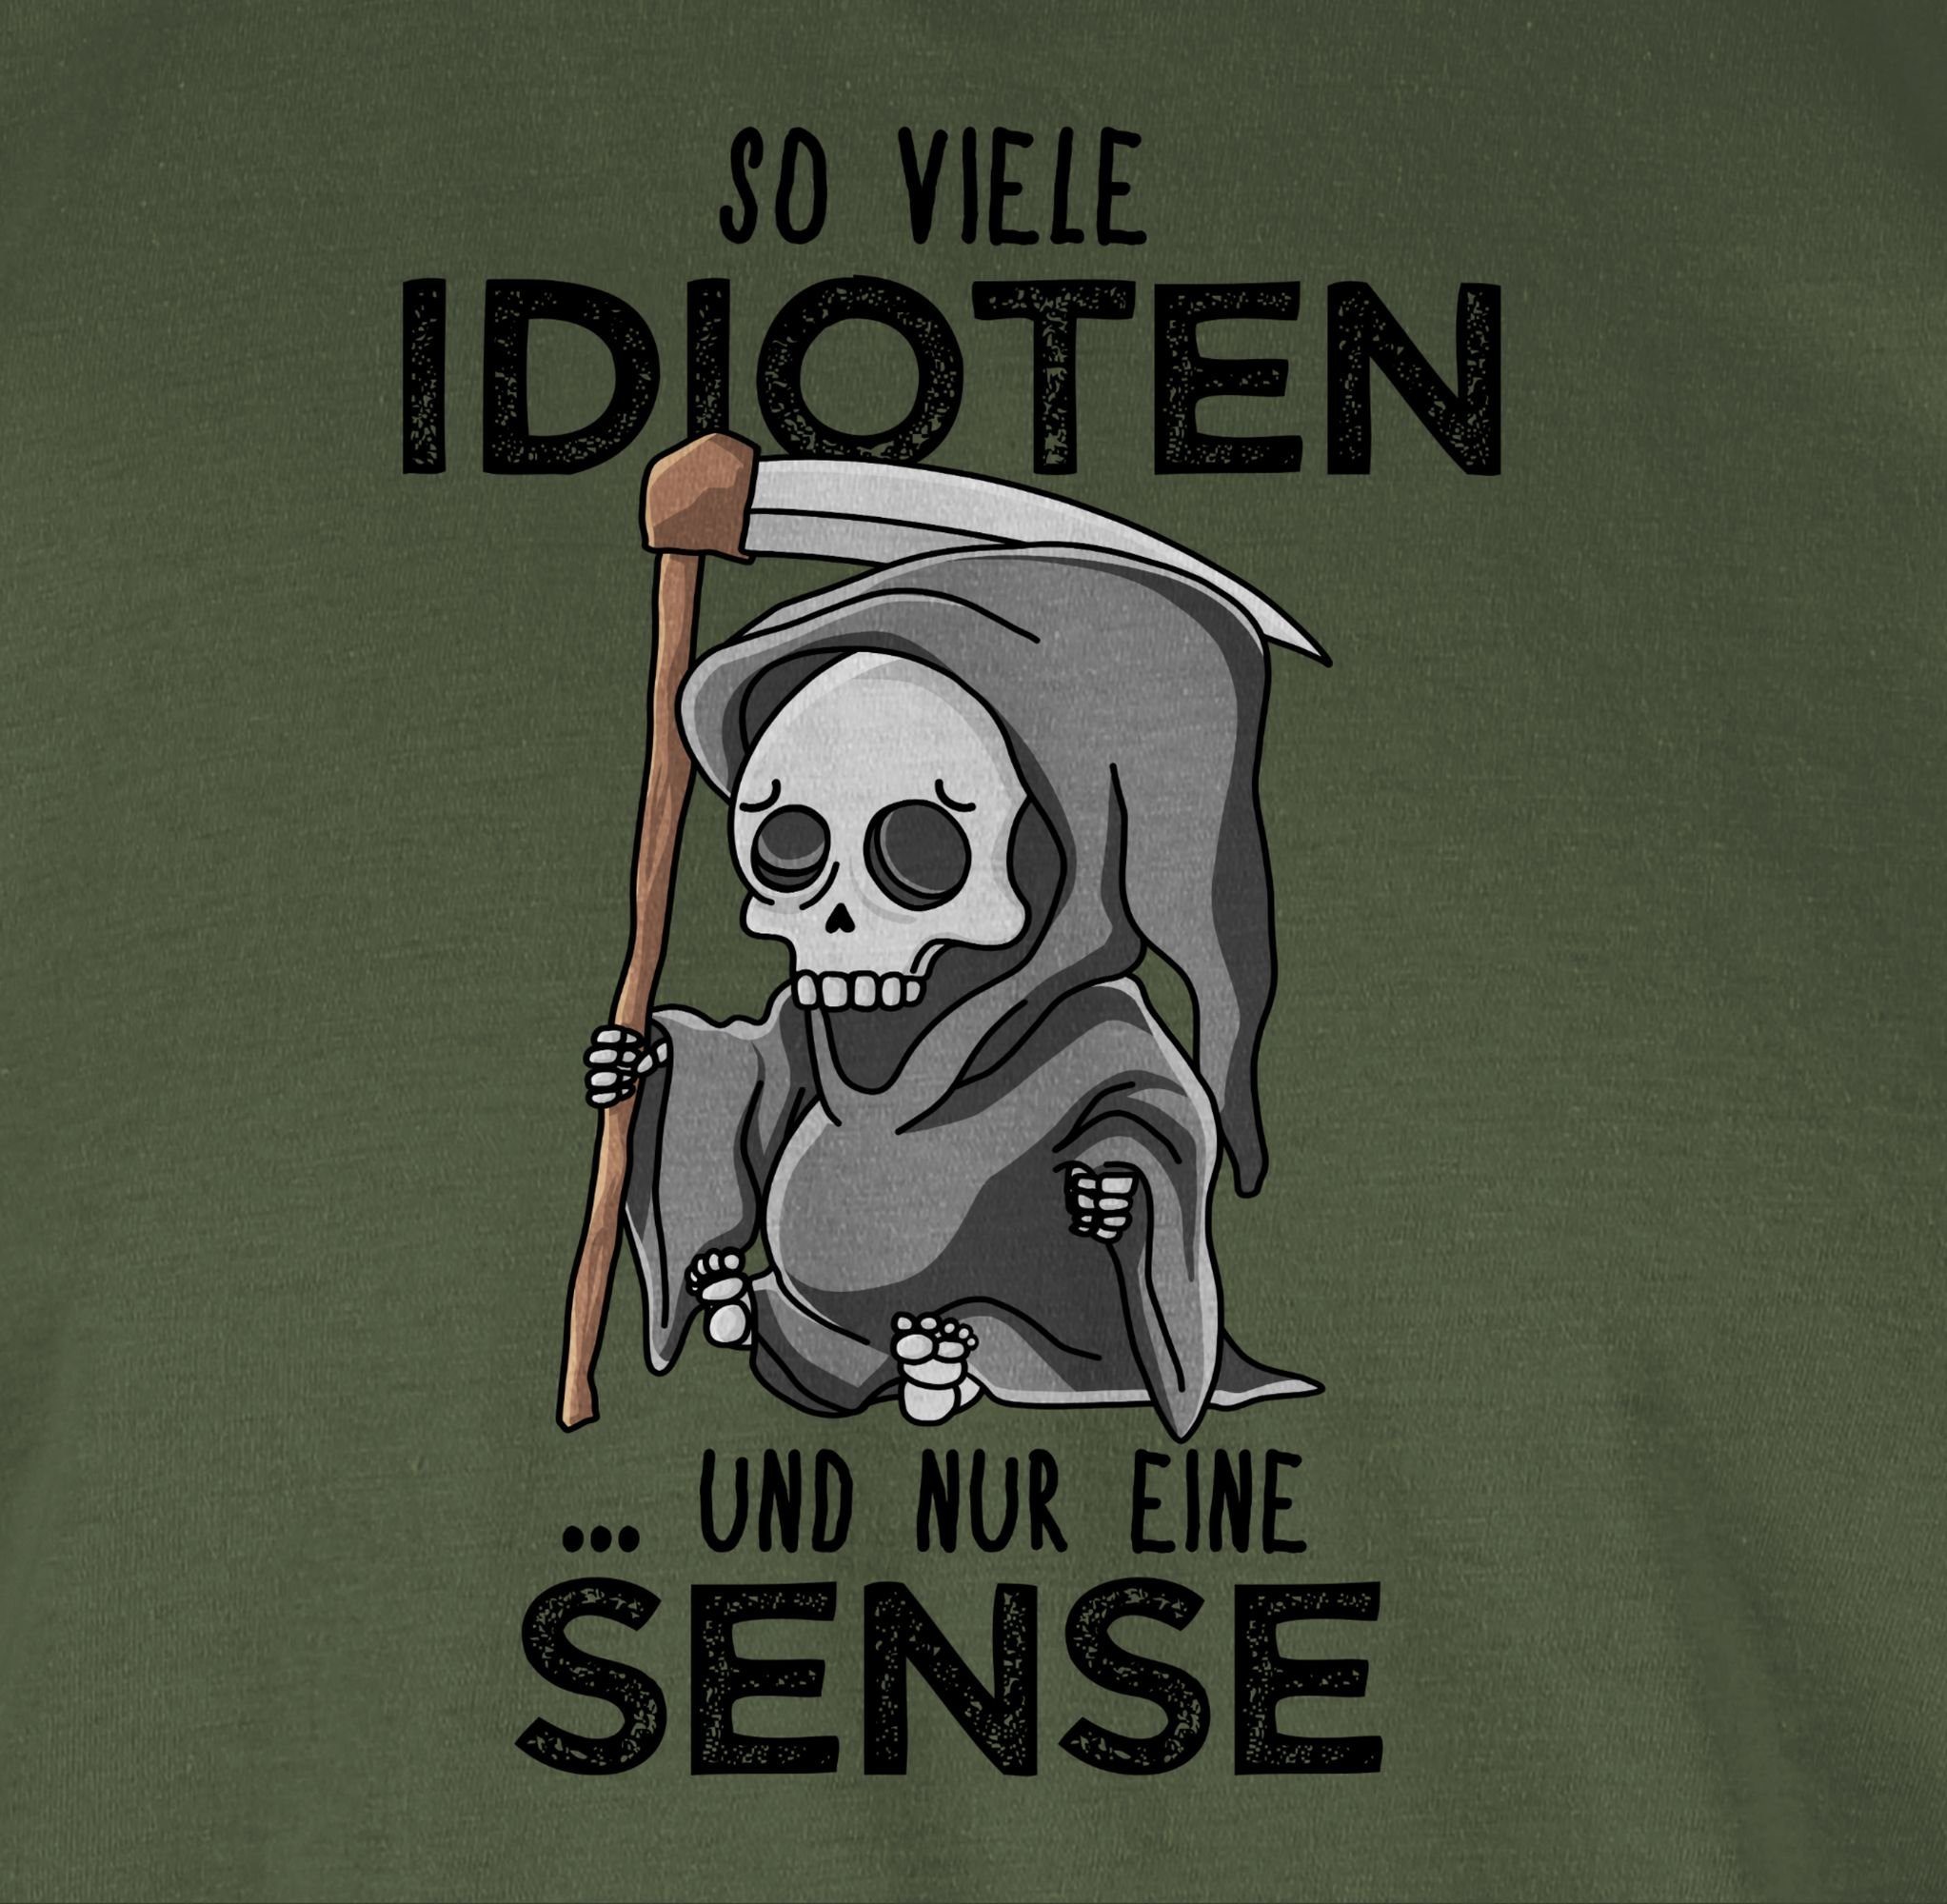 T-Shirt viele - 01 und Schwarz Sprüche eine Shirtracer Statement Spruch nur Army Idioten So Sense Grün mit